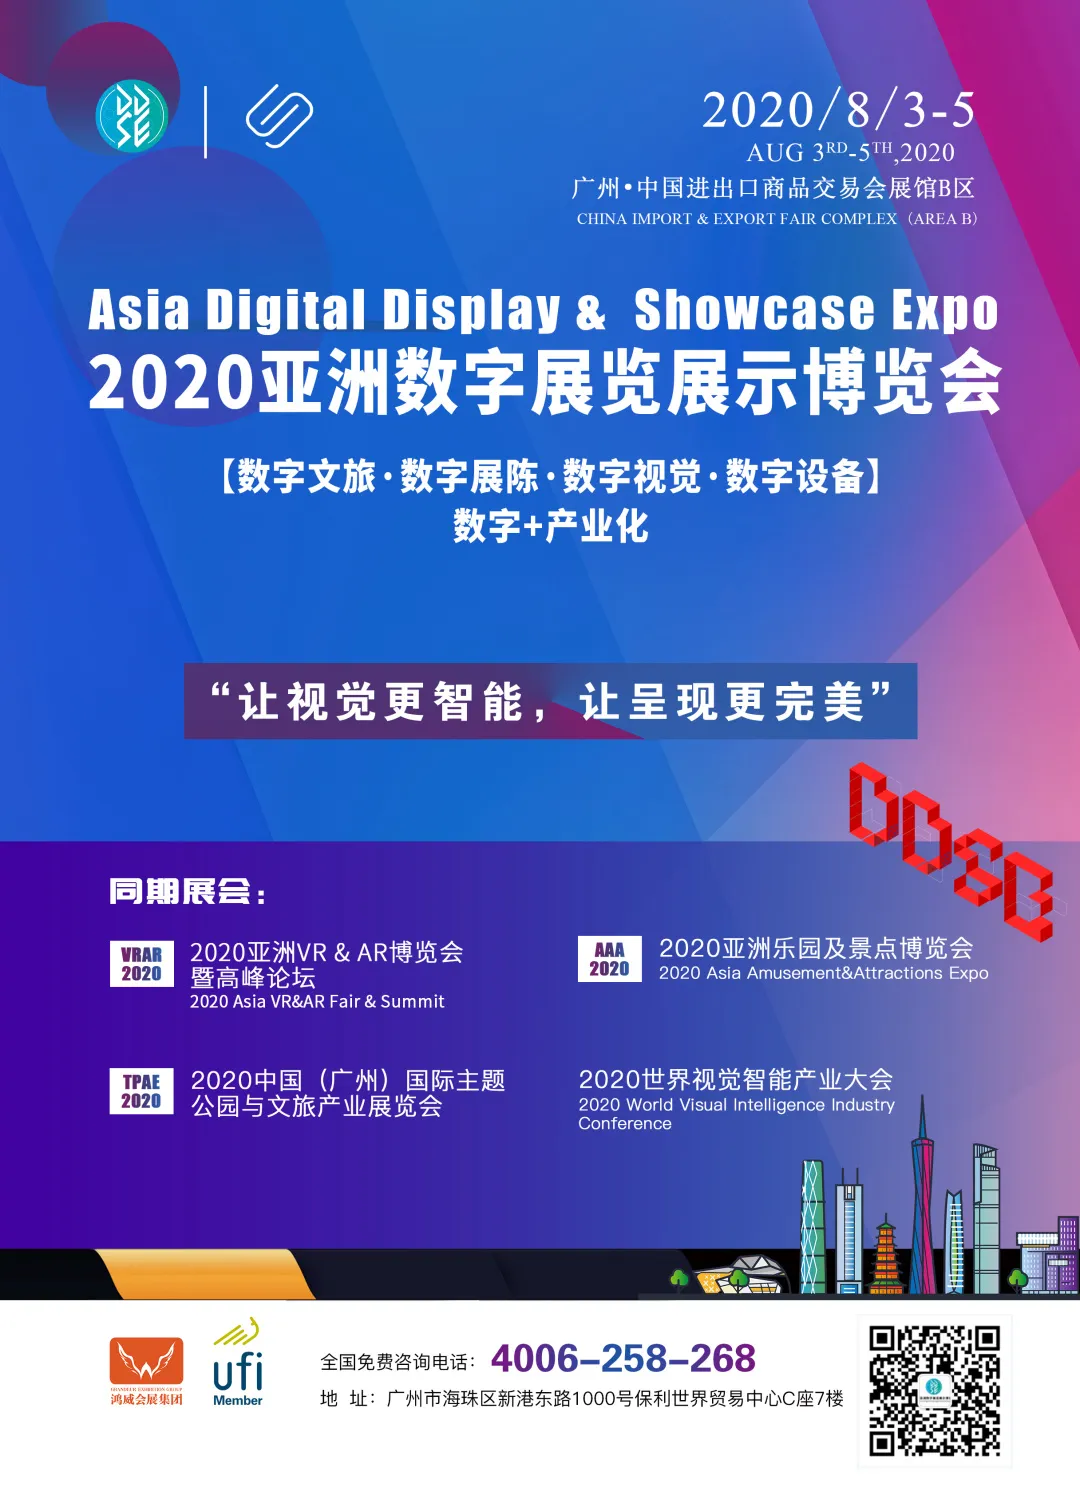 乐都光电参加亚洲数字展览展示博览会